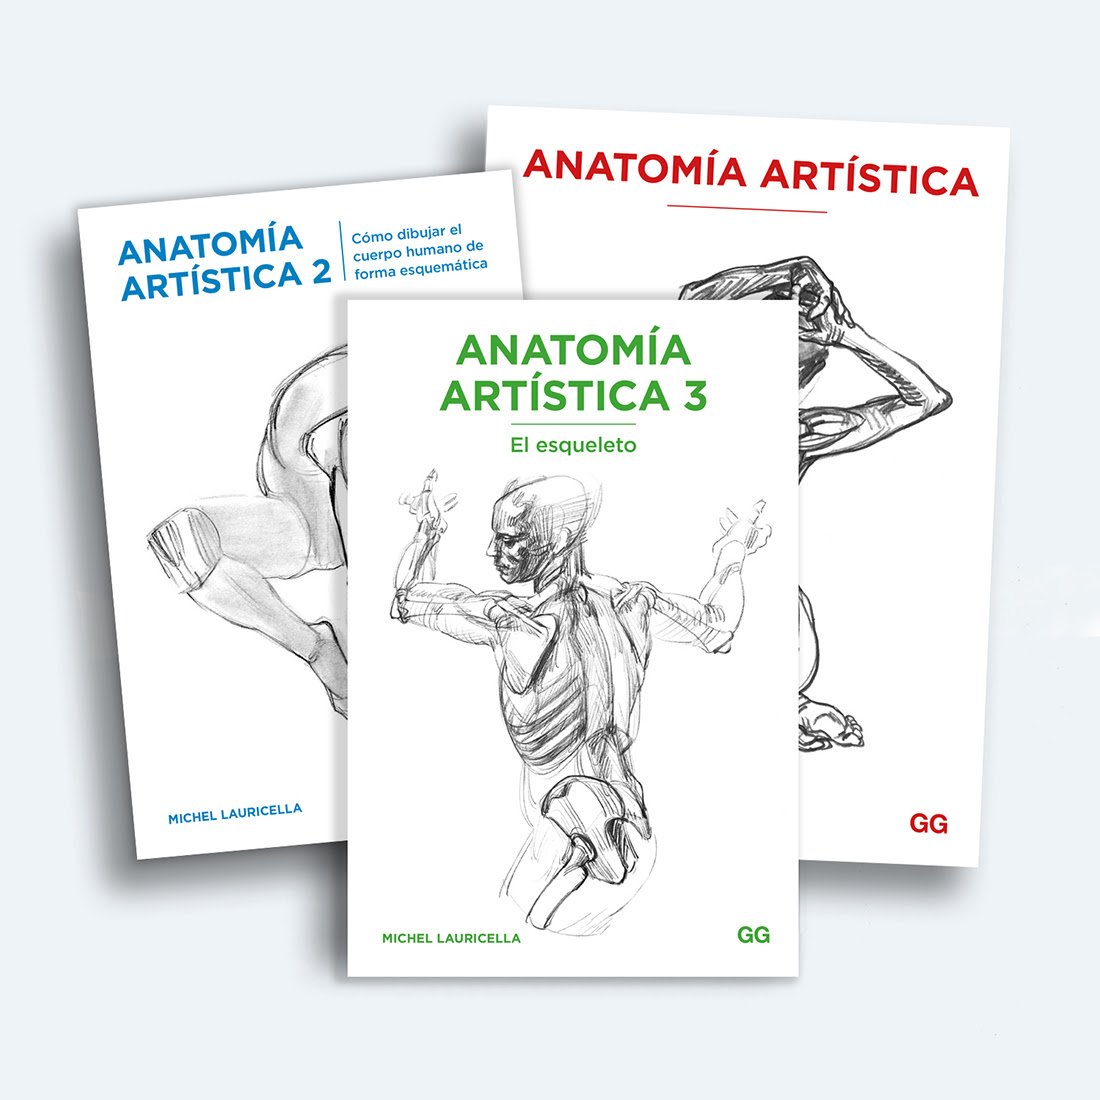 Anatomía Artística. Michel Lauricella